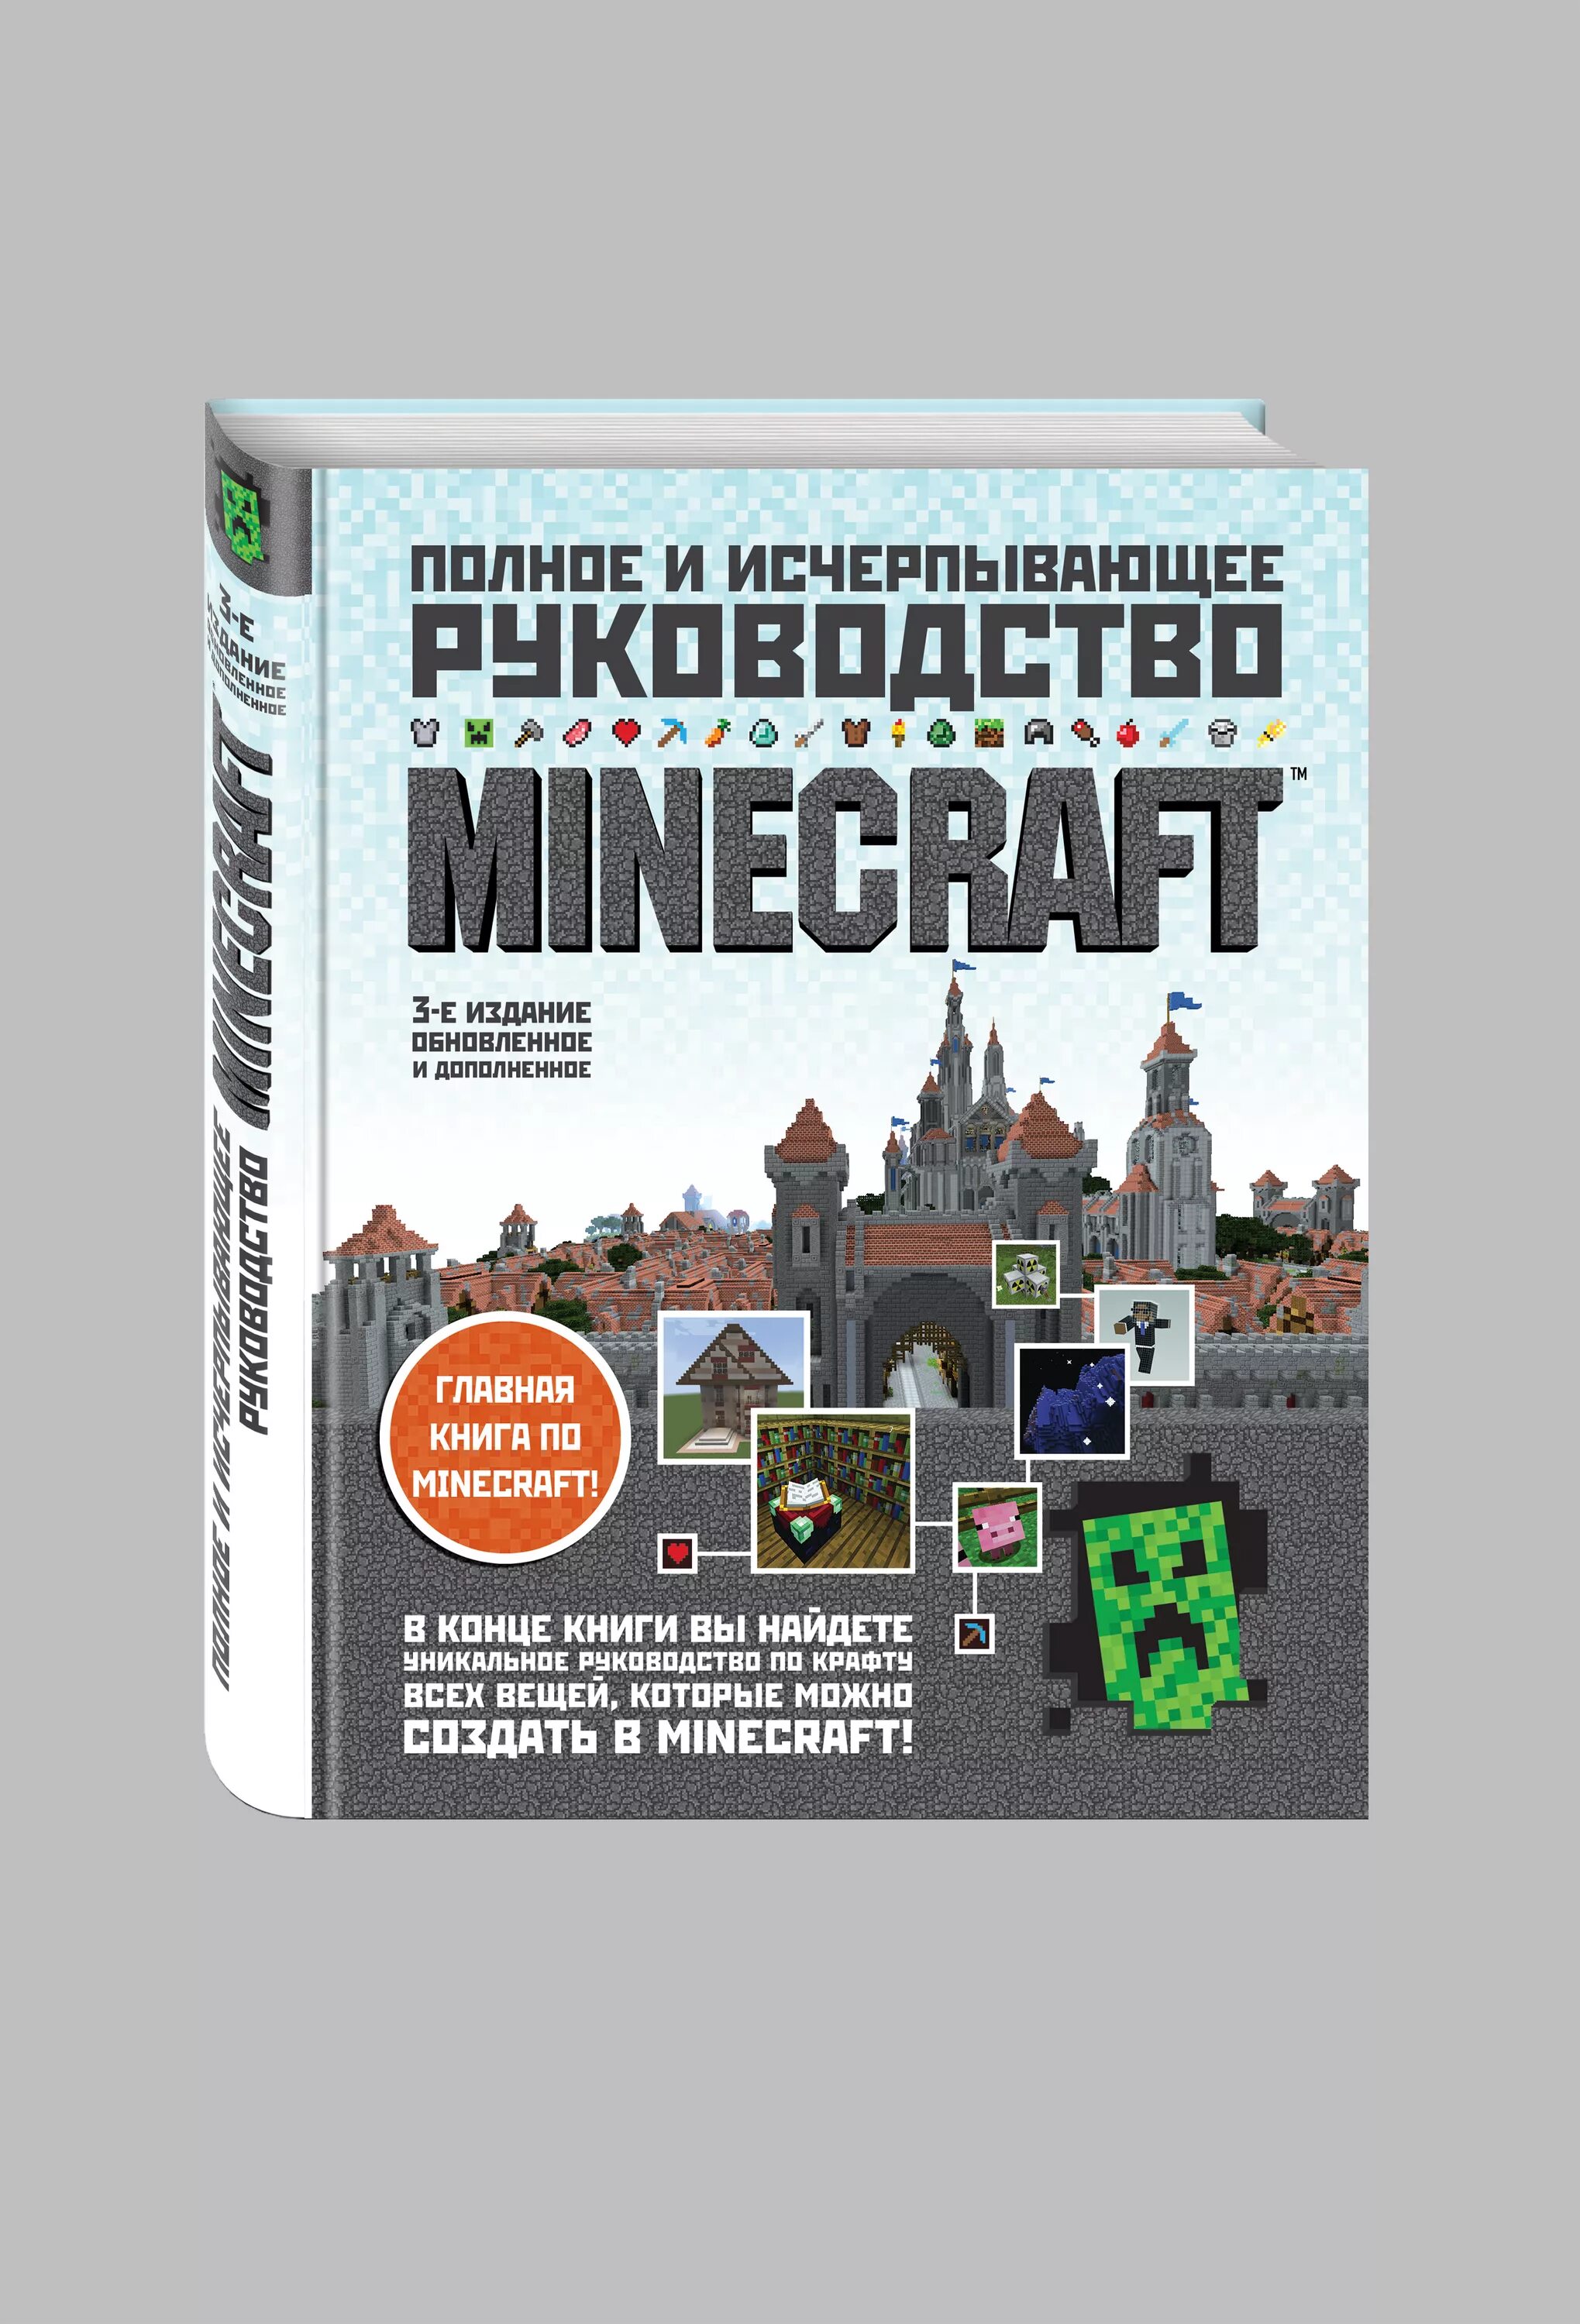 Официальные книги майнкрафт. Minecraft книга руководство. Полное и исчерпывающее руководство Minecraft 1 издание. Полное руководство по майнкрафту. Все книги по майнкрафту.